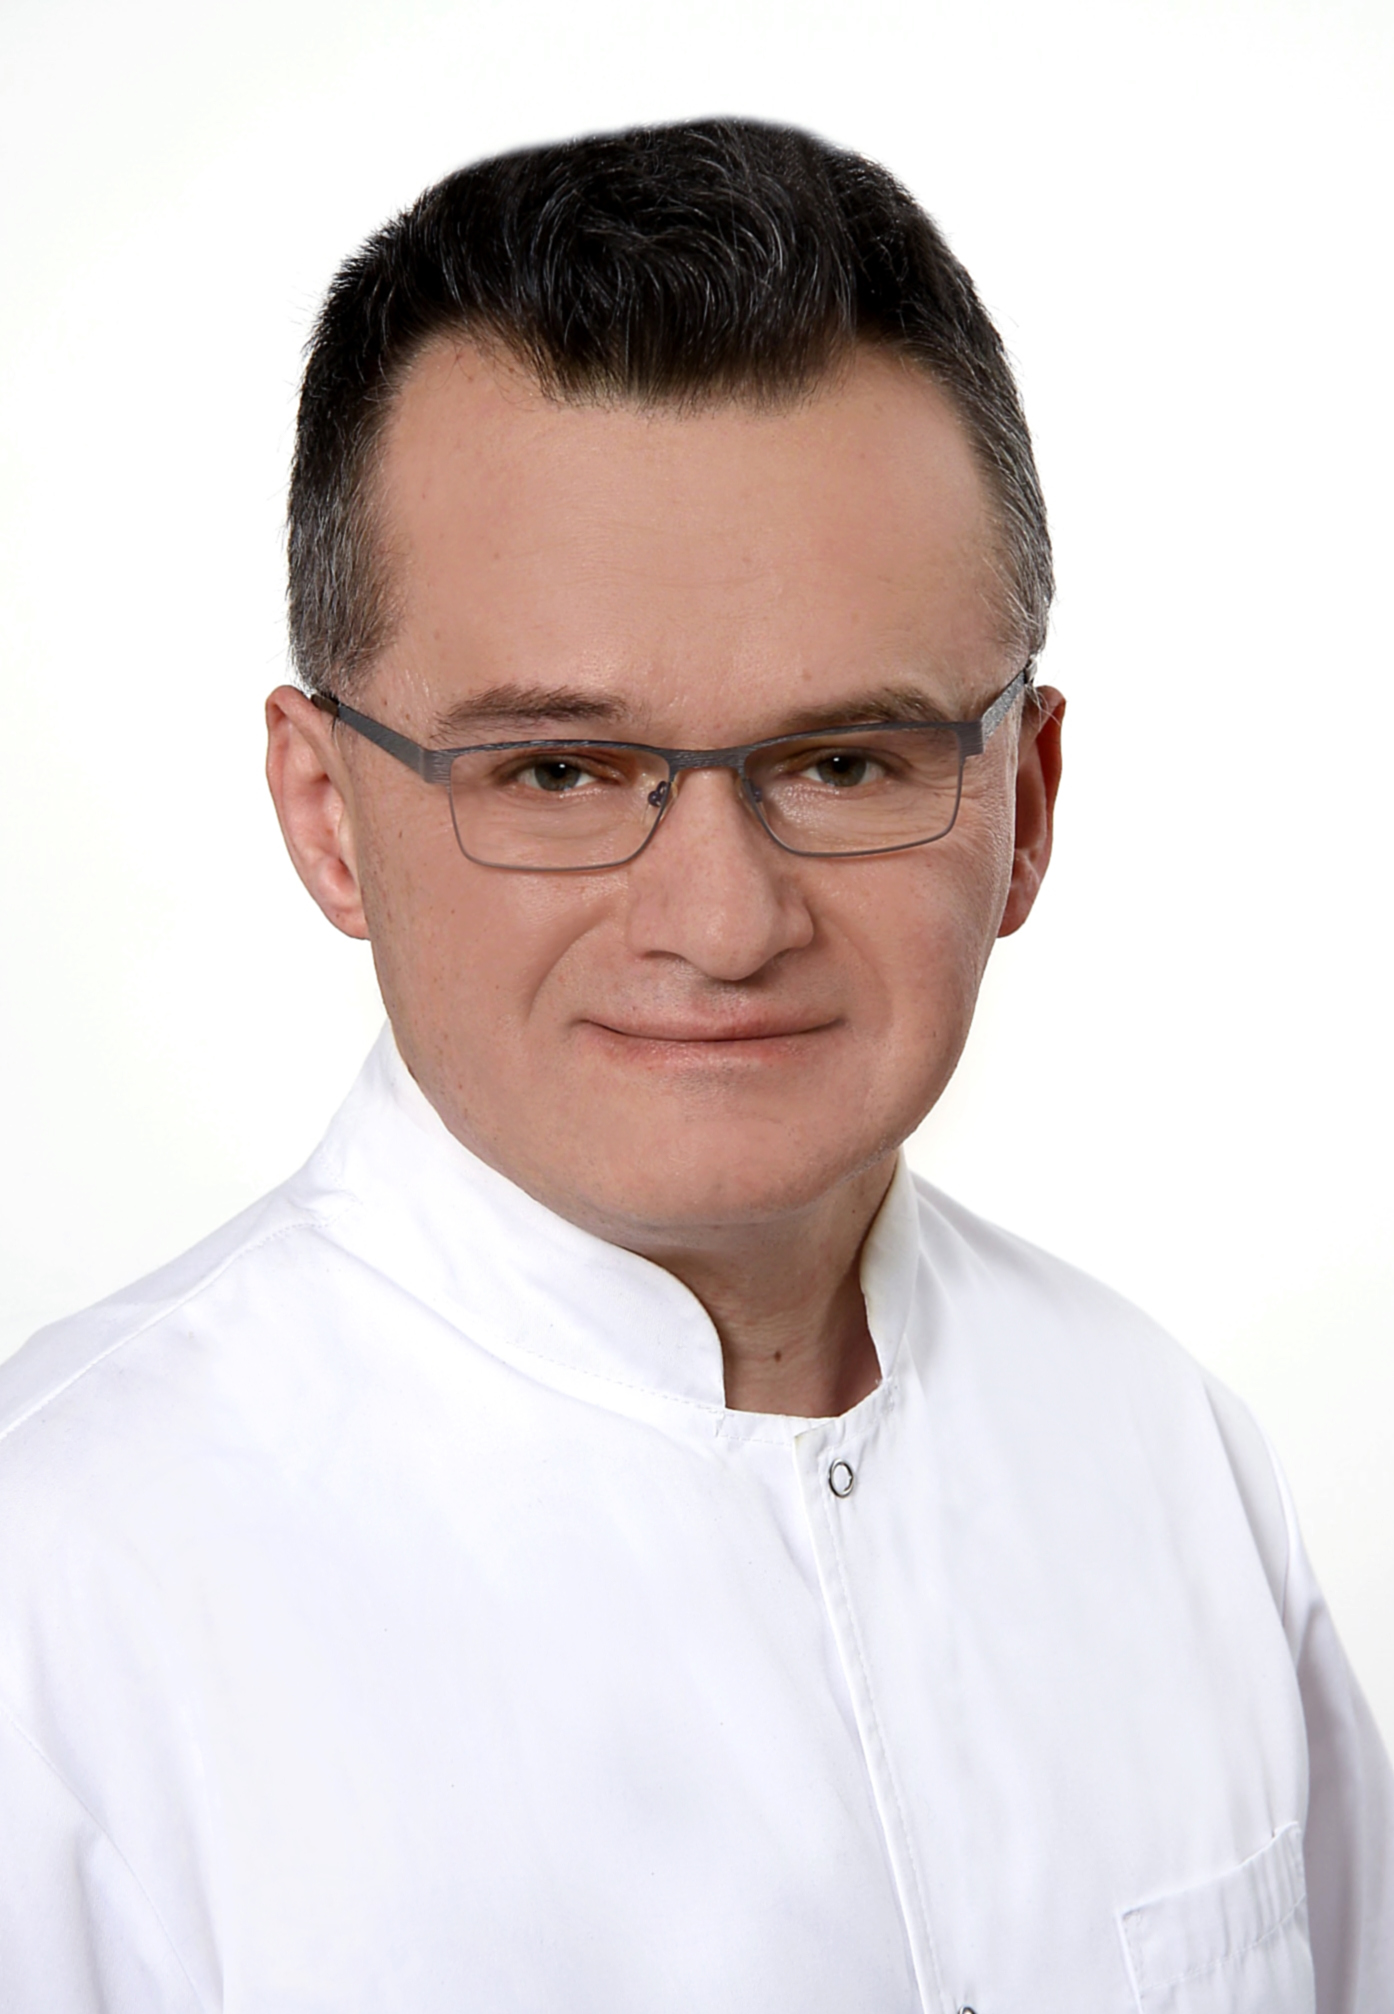 Jacek Twarowski